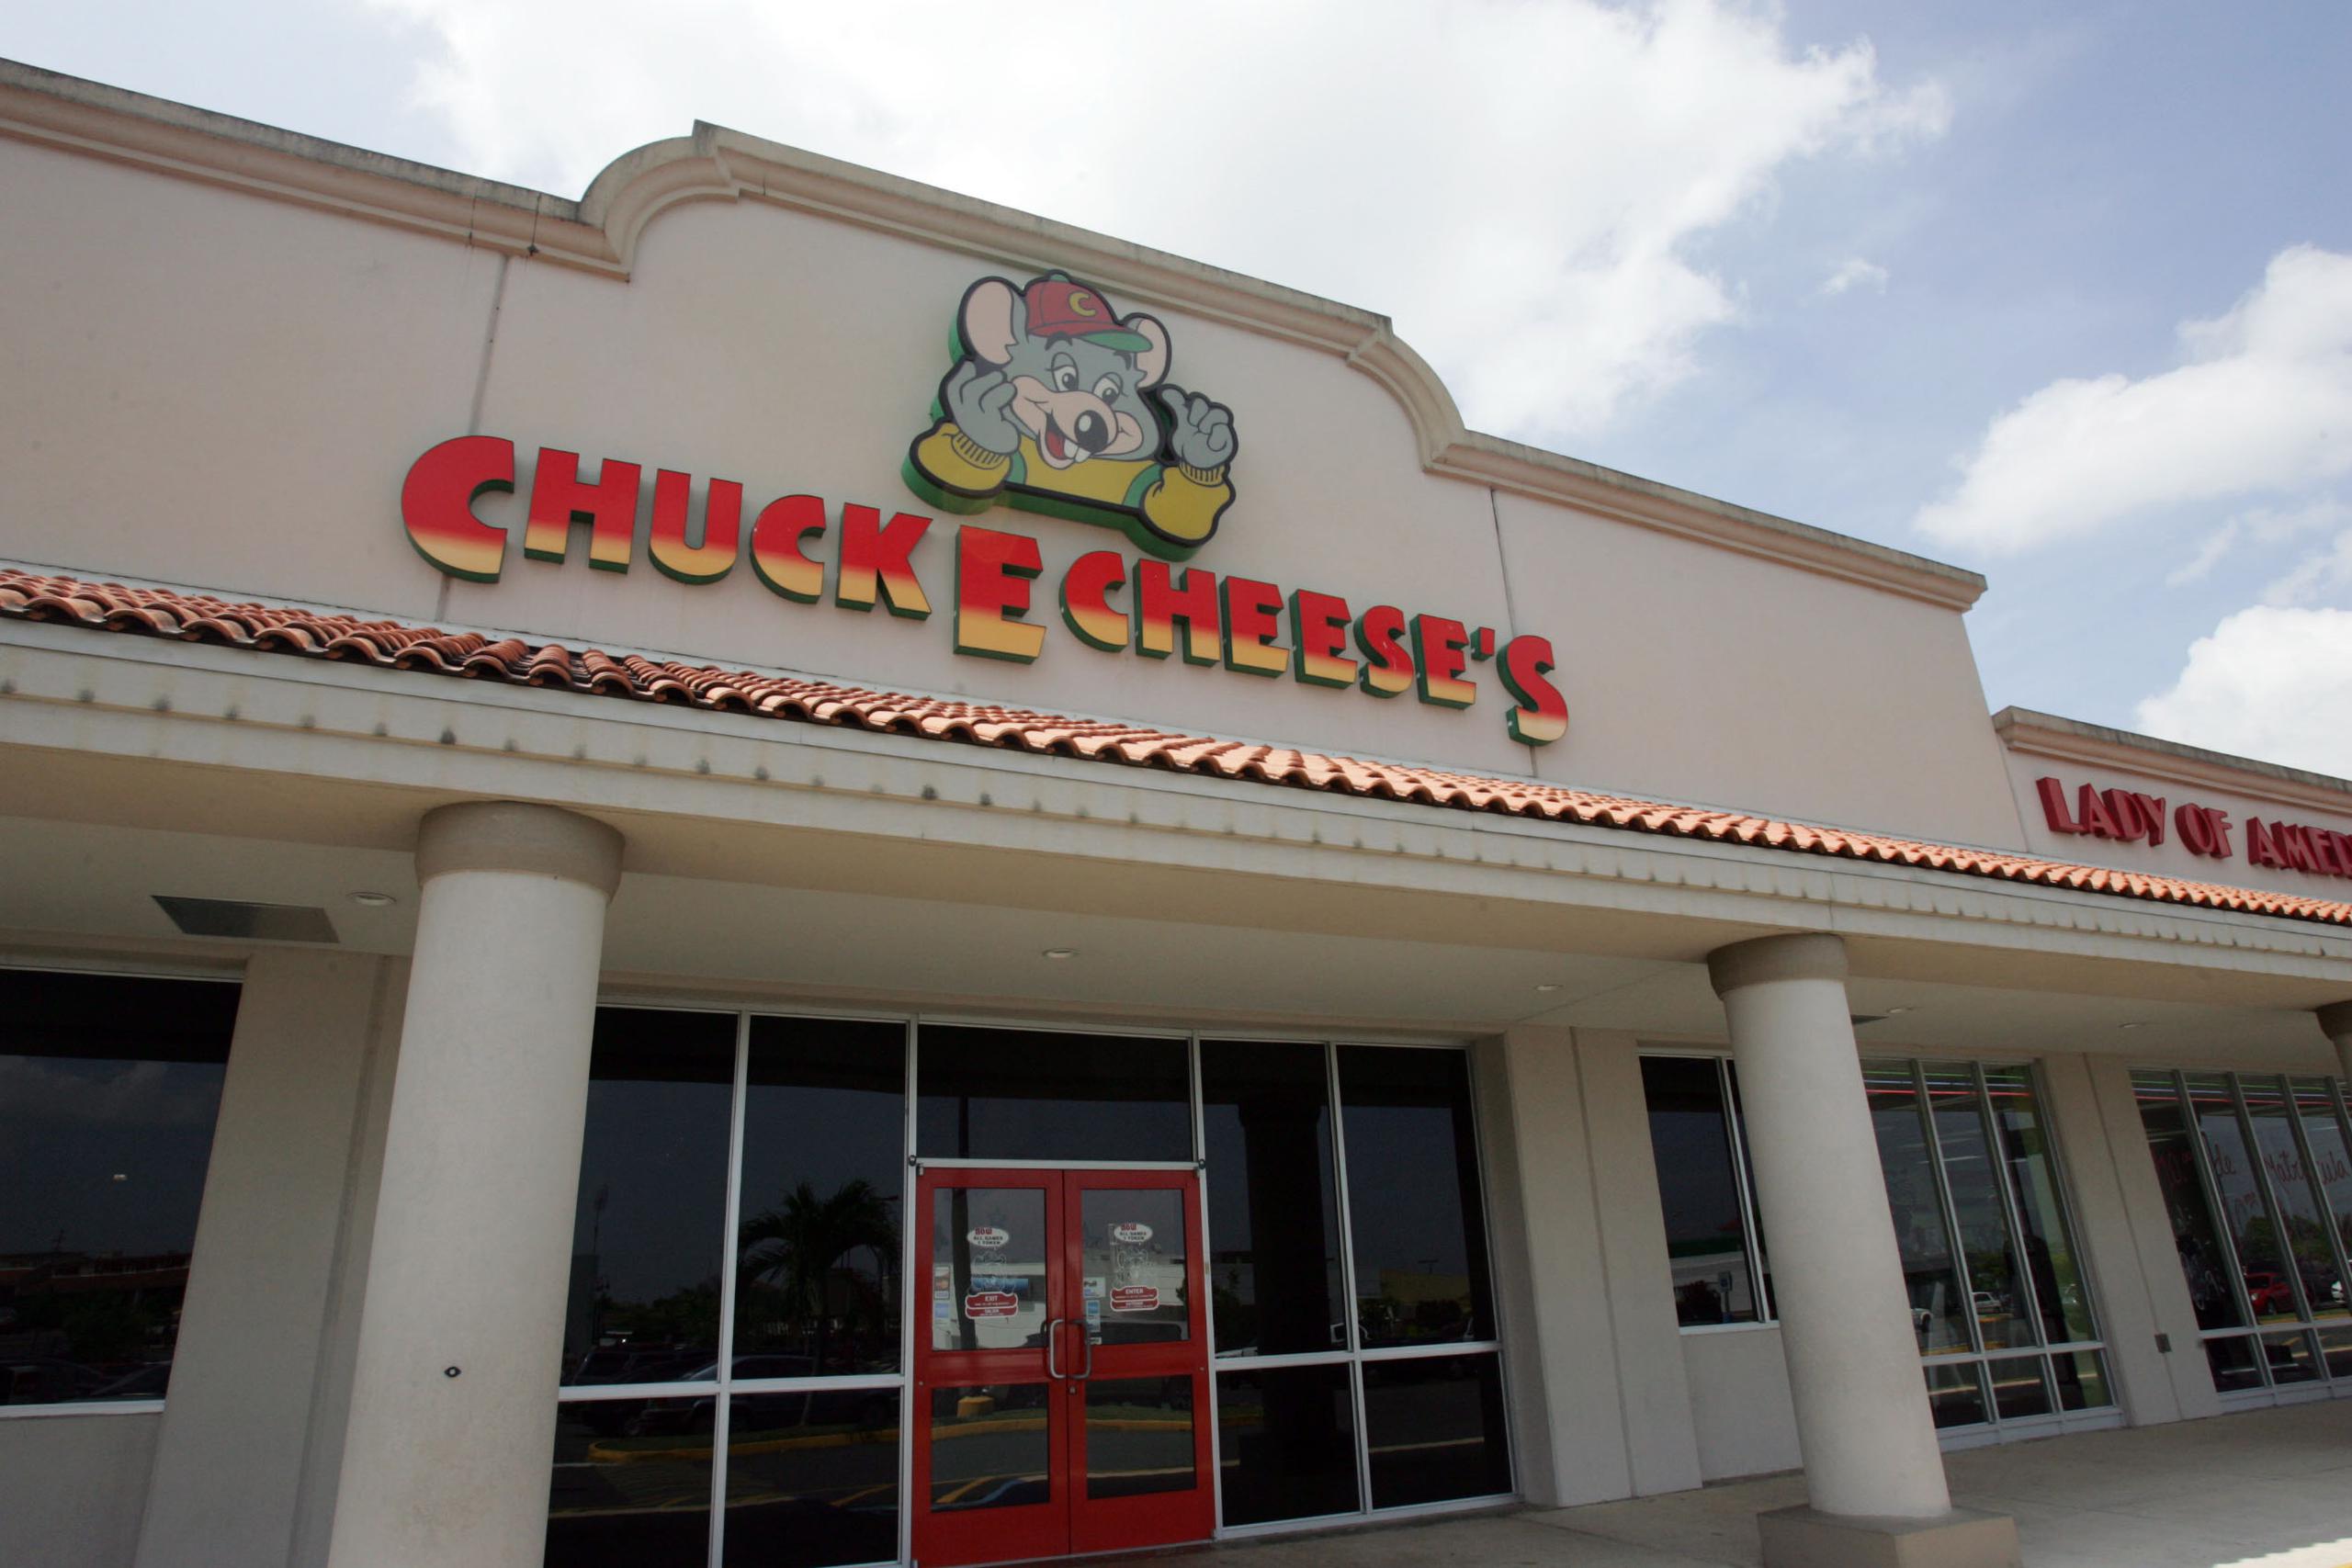 La industria de servicios, que incluye restaurantes, ha sido devastada por la pandemia. Los restaurantes que pueden ofrecer comida para llevar lo han hecho, pero aquellos que dependen de cenar, como Chuck E Cheese, han sido muy golpeados.